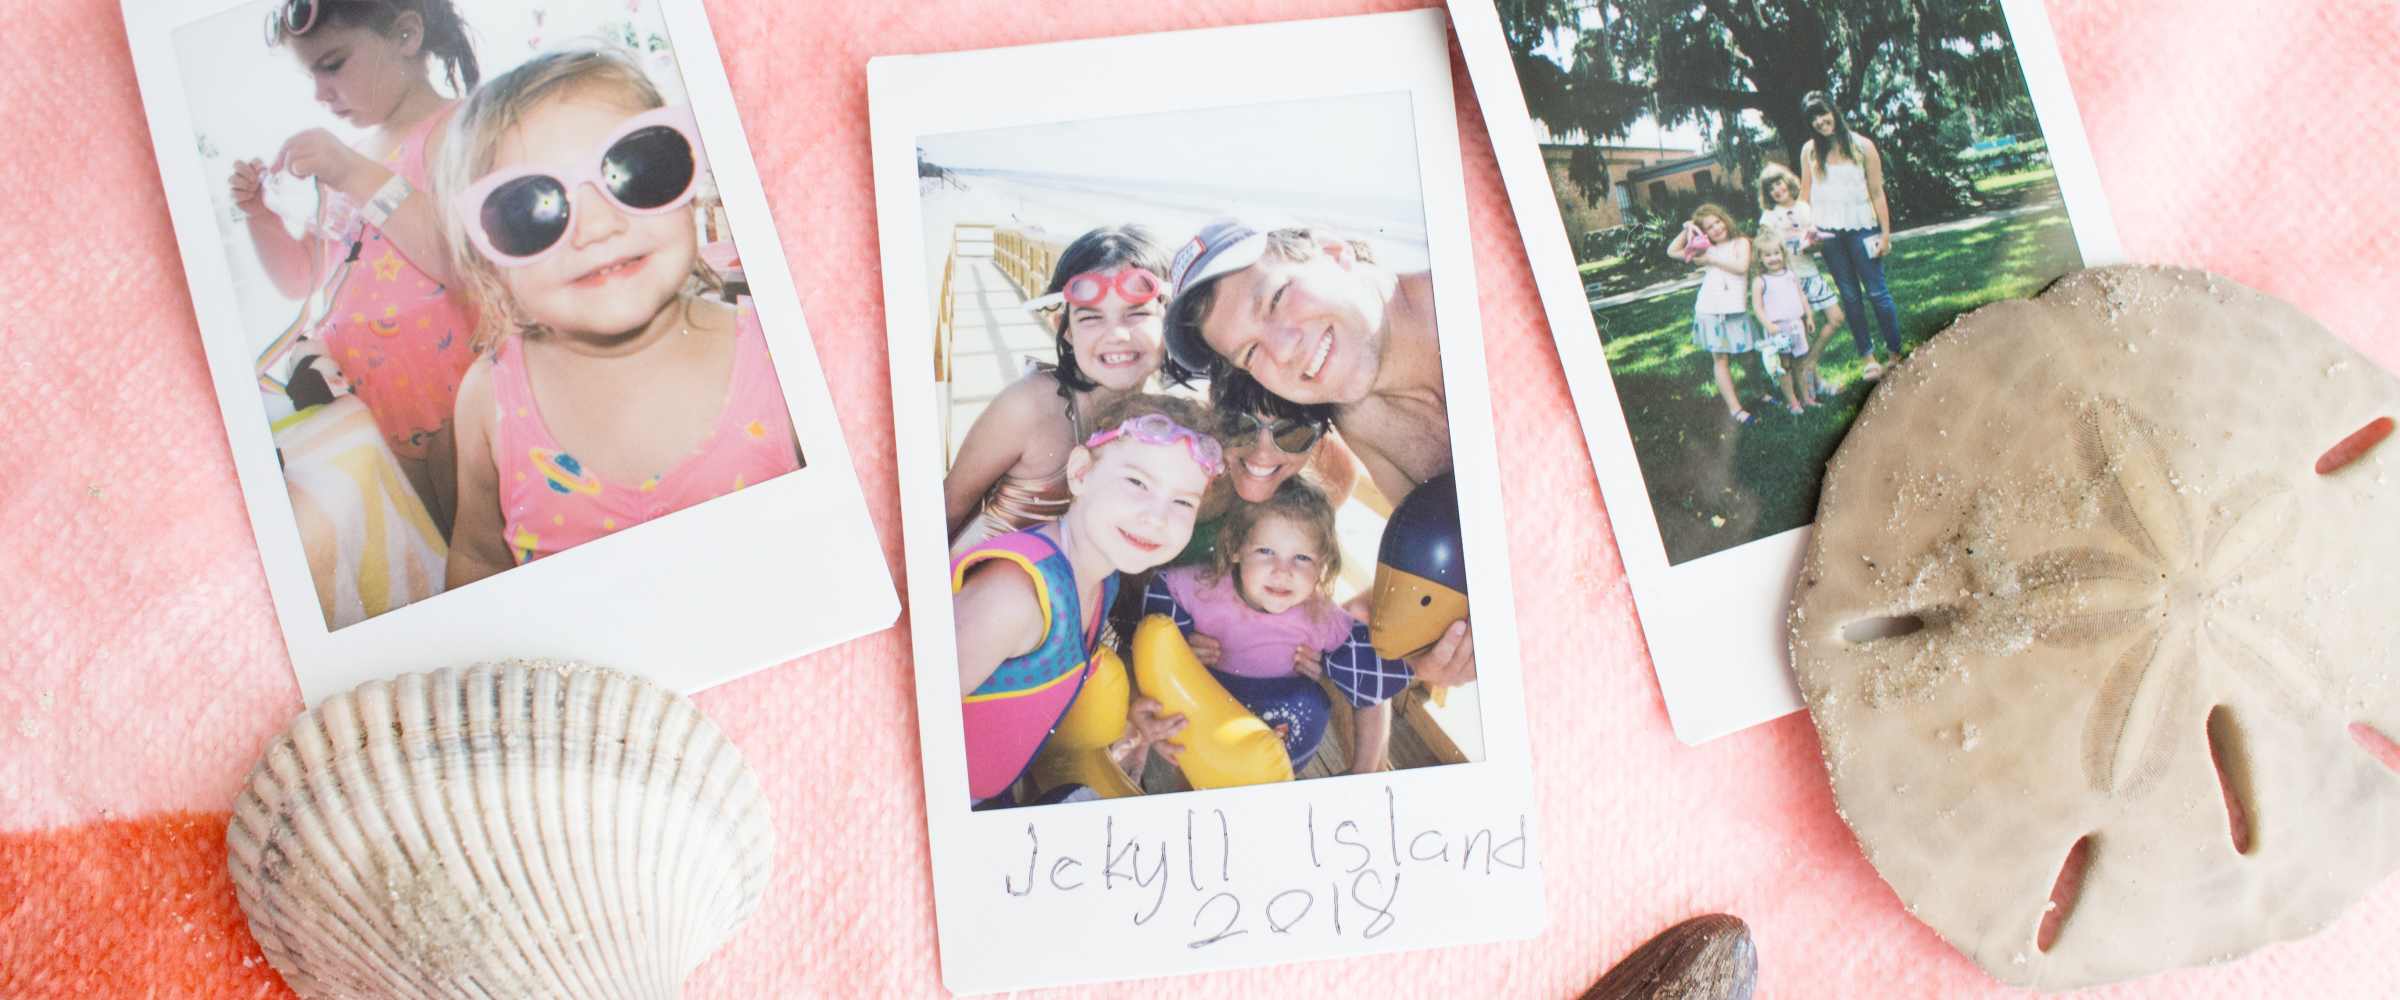 A Family Vacation to Jekyll Island